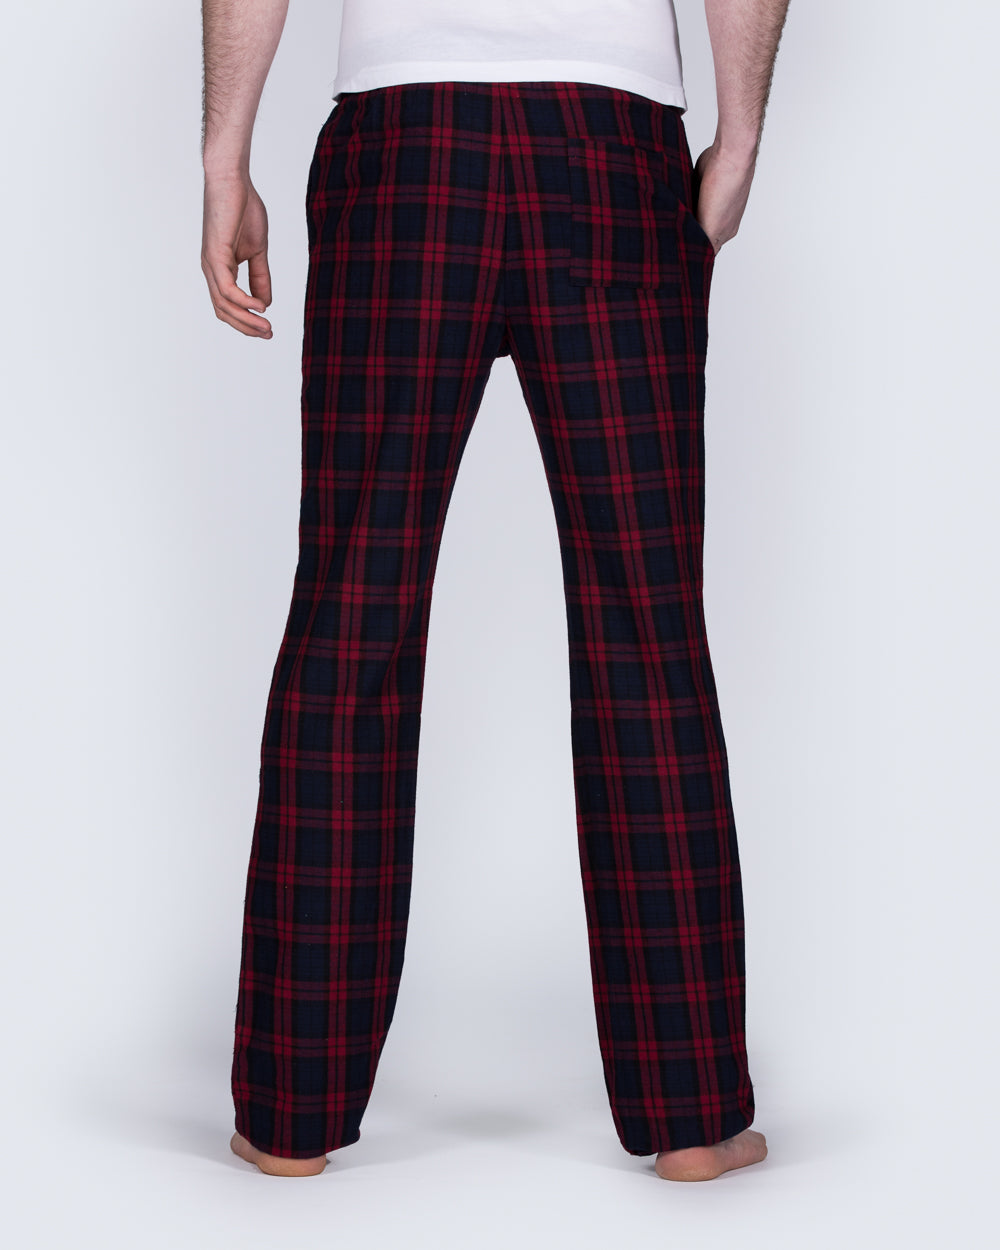 2t Tall Slim Fit Pyjama Bottoms (red pattern)